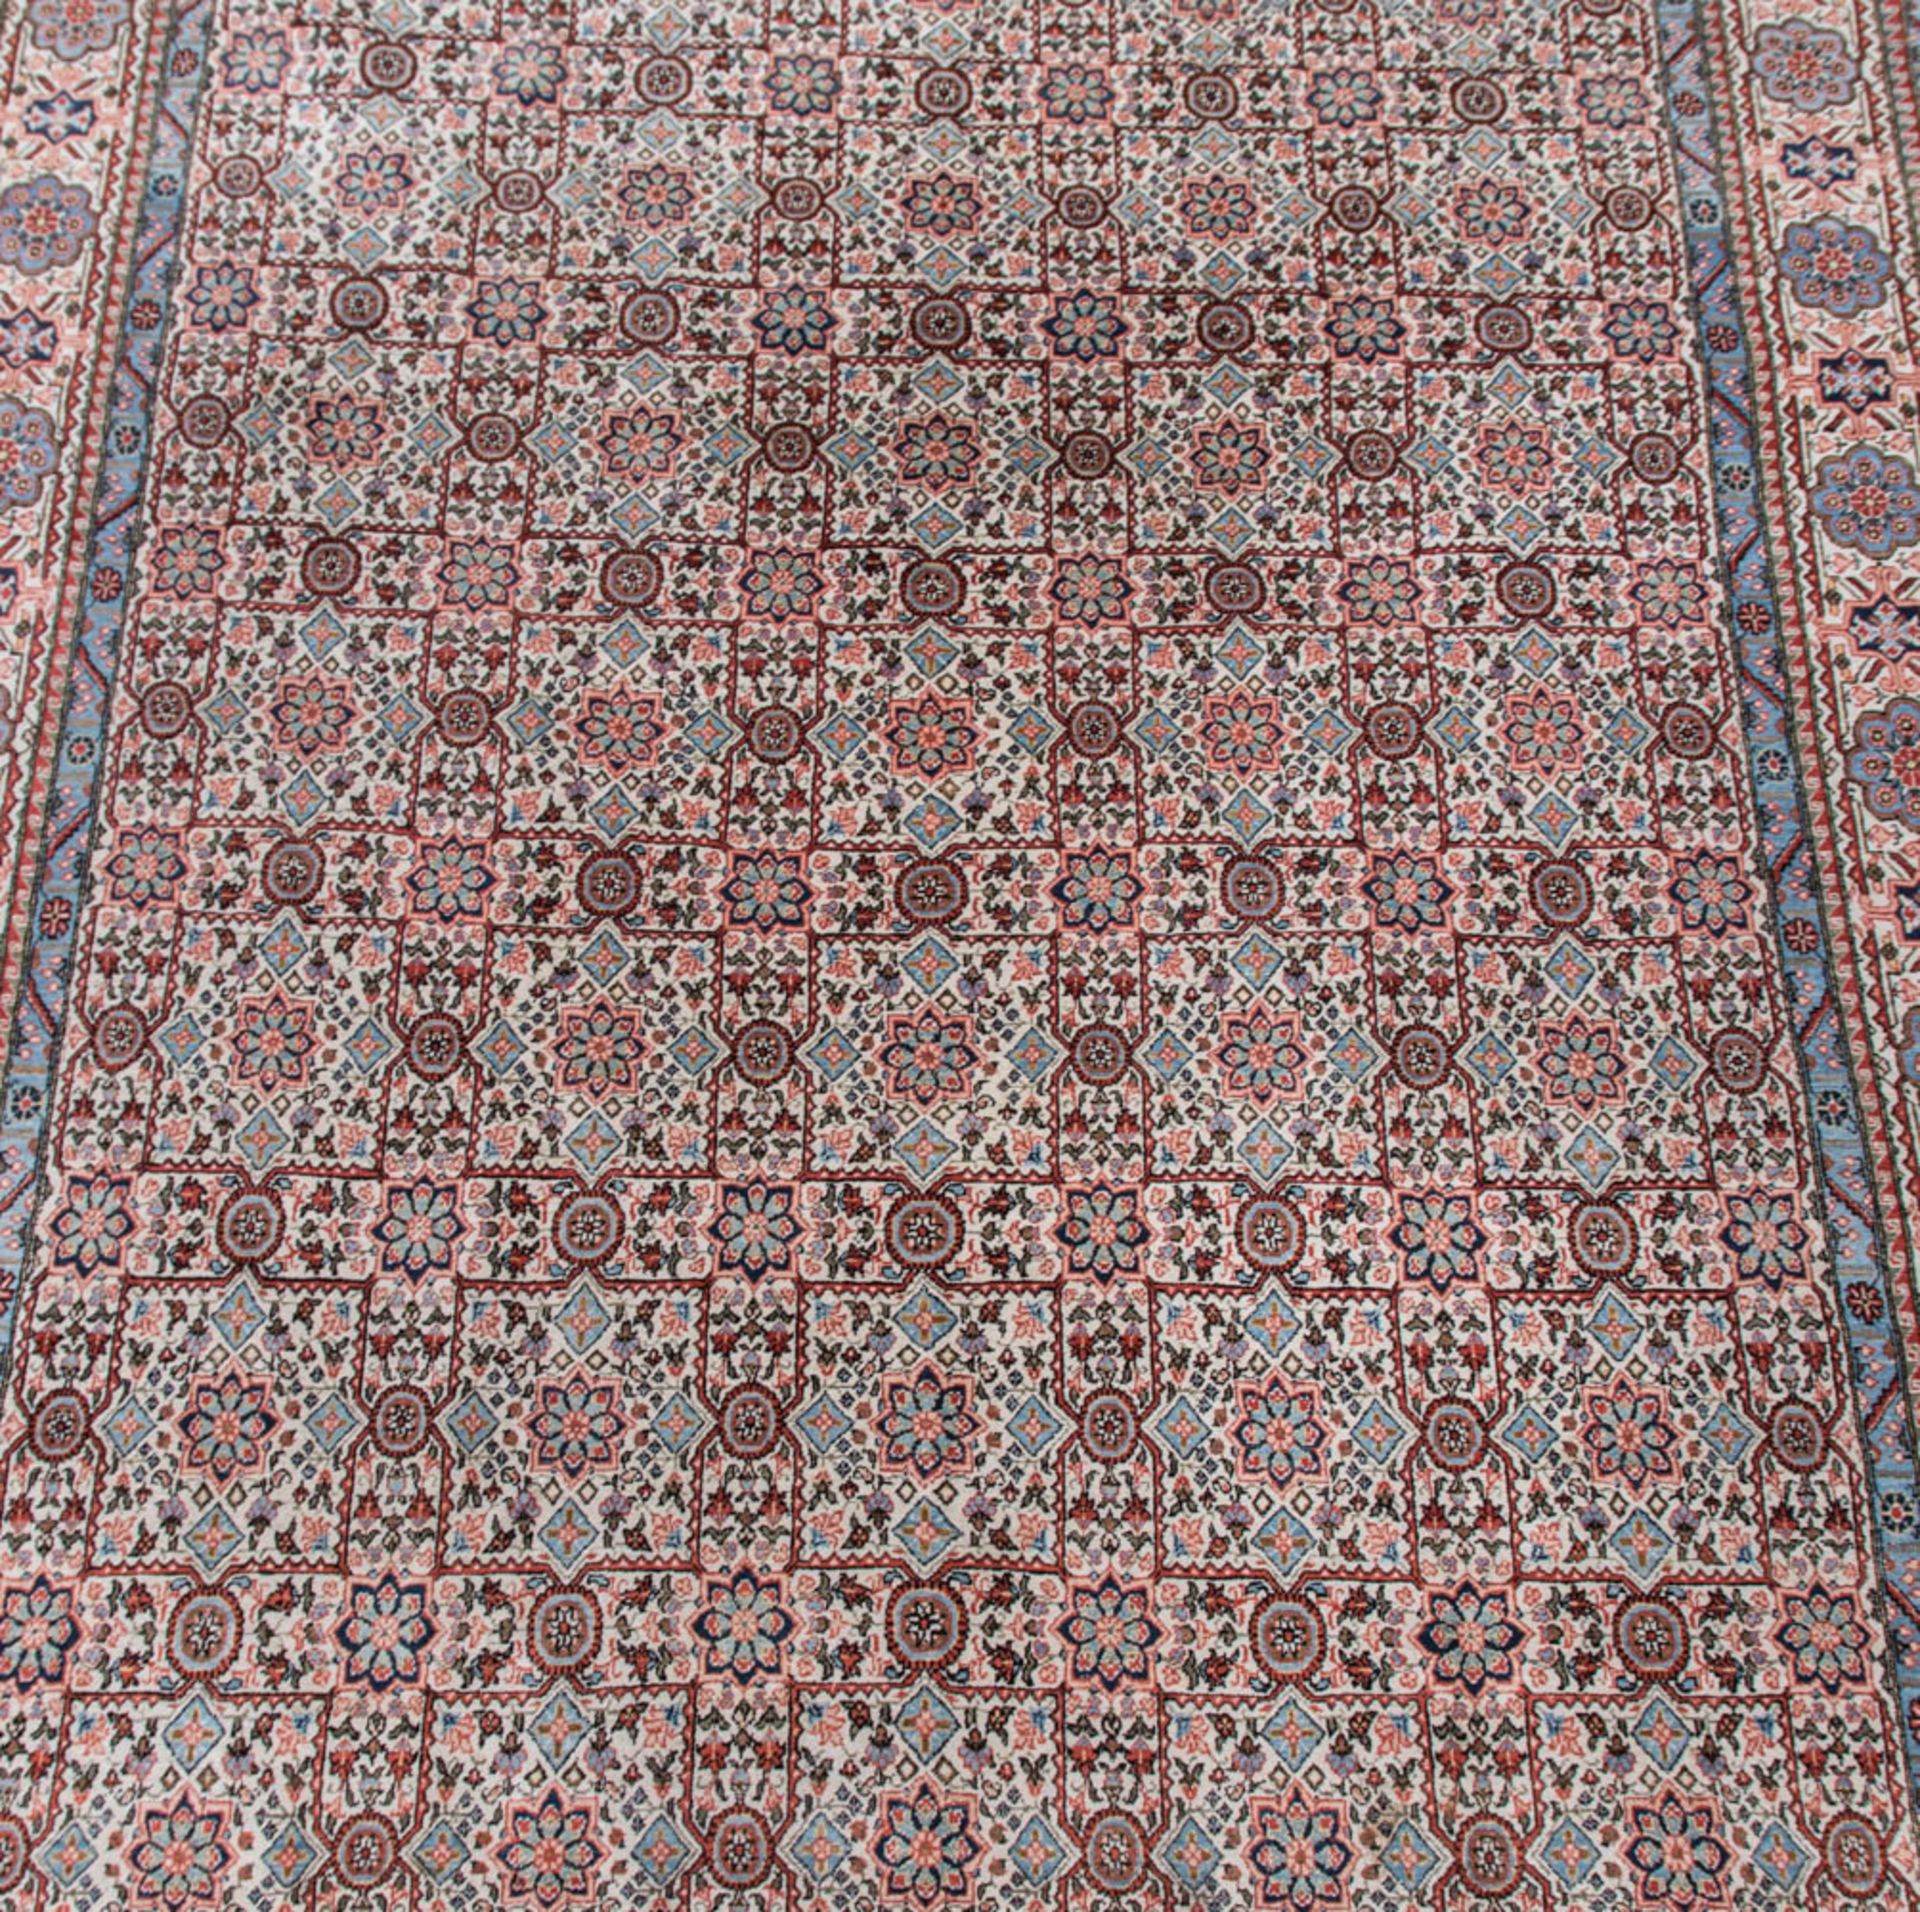 Großer Teppich in rot und blau, Baumwolle.360 x 337 cm - Bild 3 aus 8